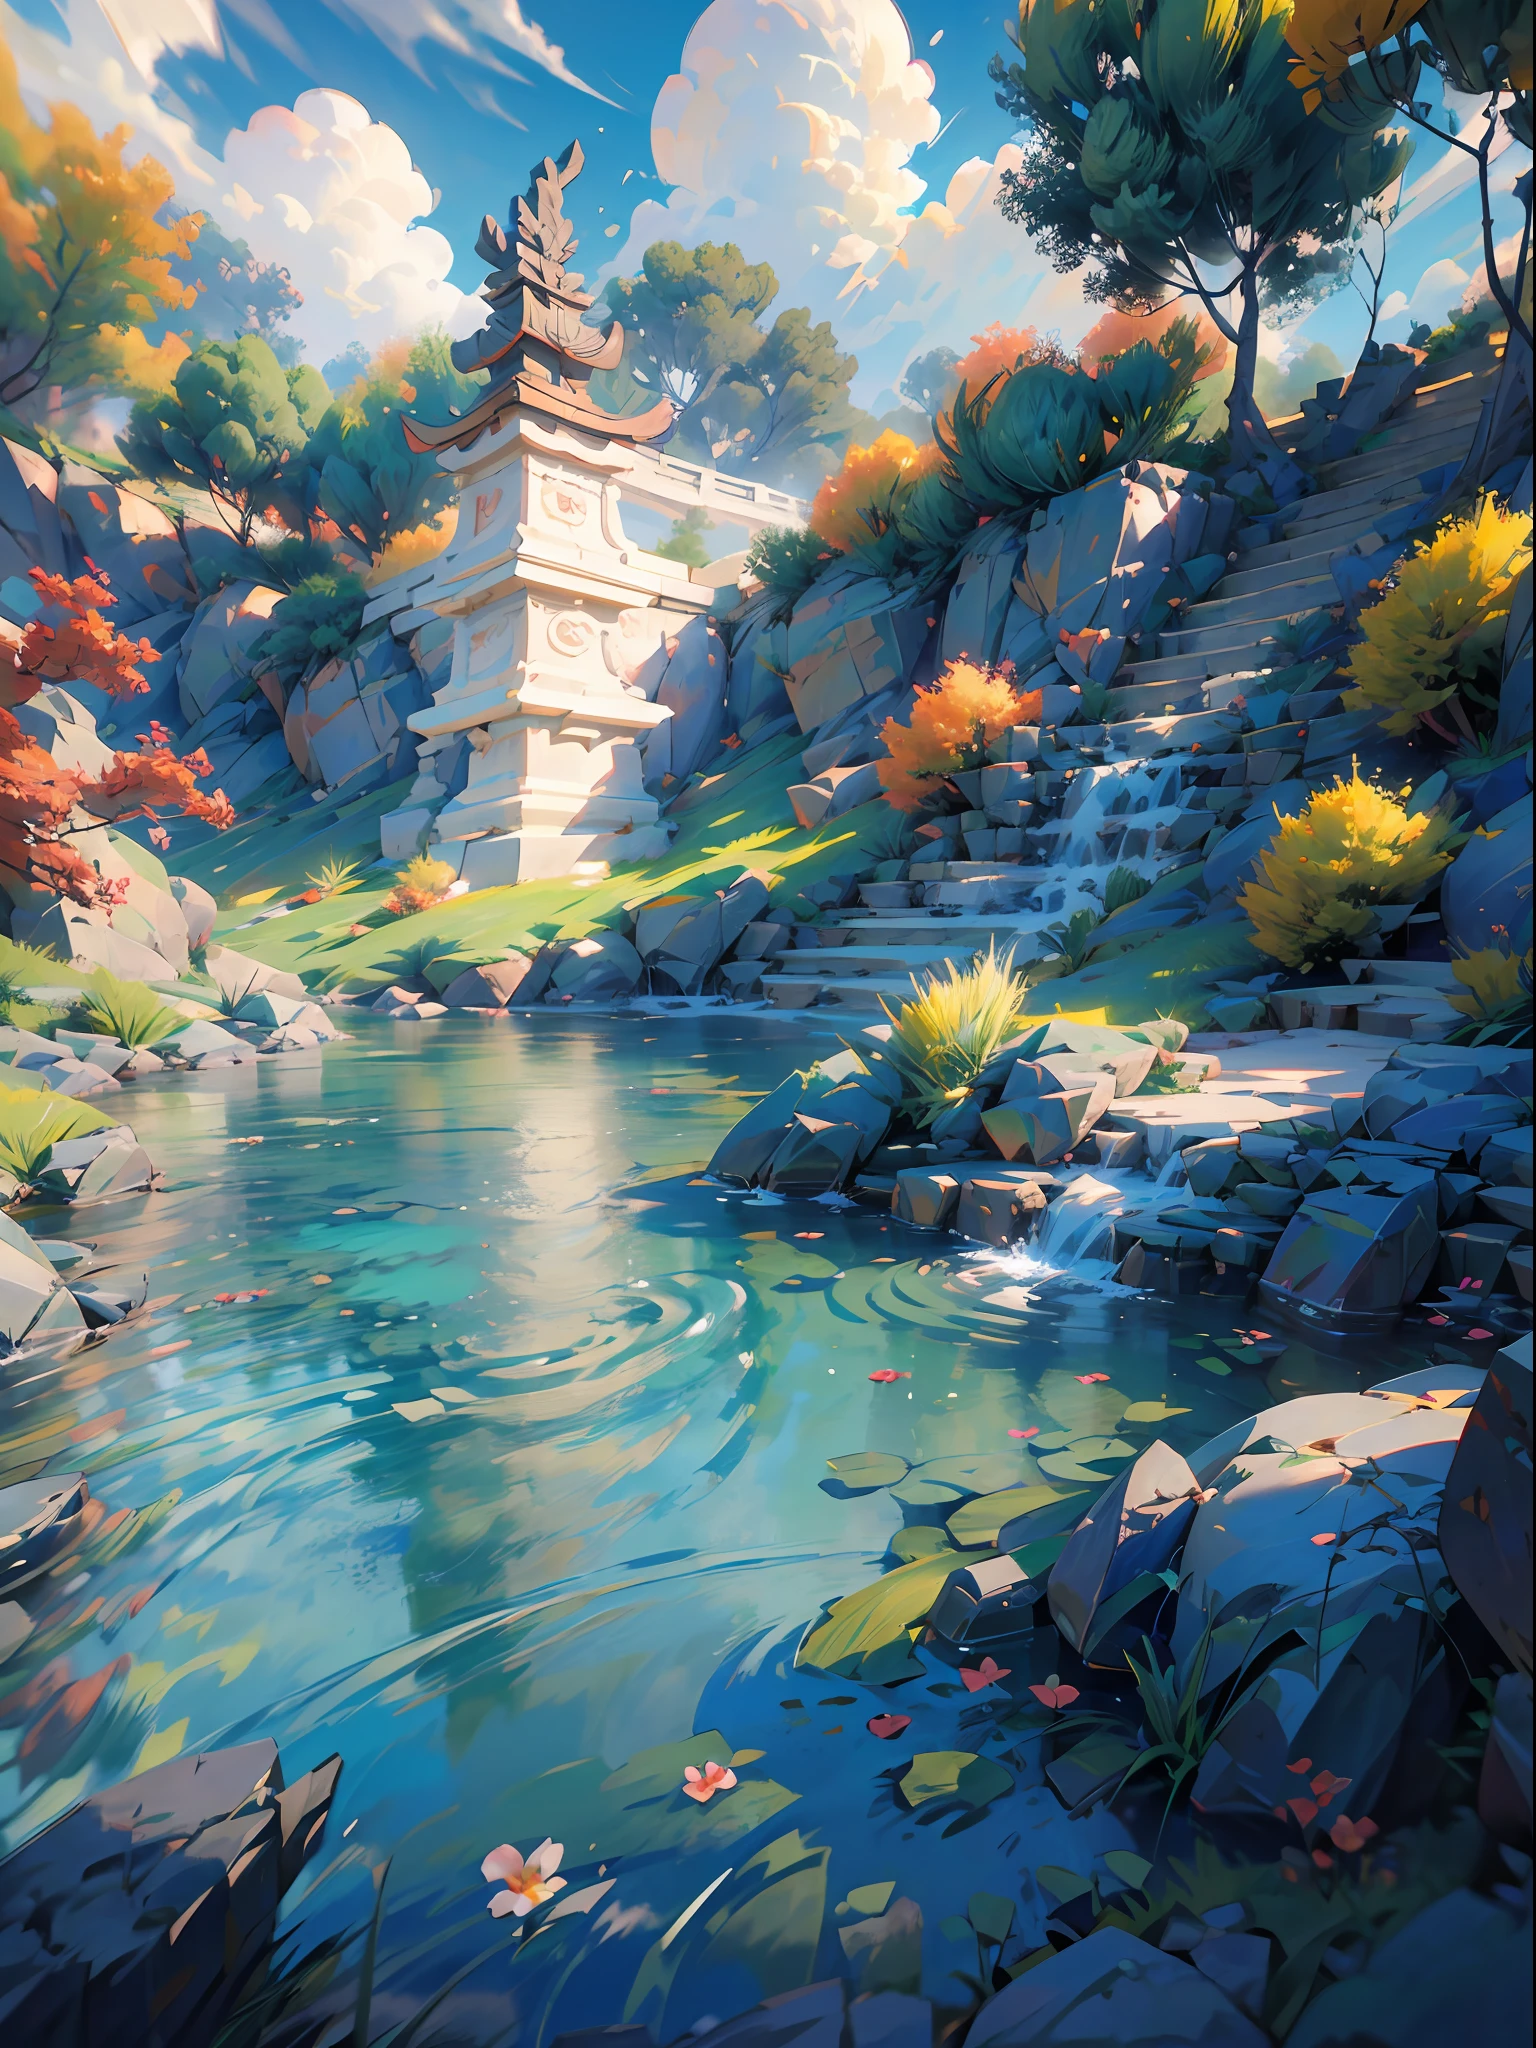 Un fondo de pantalla CG unity 8K increíblemente detallado y fotorrealista, la belleza de un jardín chino clásico, El impresionante paisaje presenta un sereno lago y un río rodeados de exuberante vegetación y majestuosos árboles., luz natural, cielo azul, Nubes esponjosas, cascada, bokeh, profundidad de campo, hdr, floración, aberración cromática, y detalles intrincados